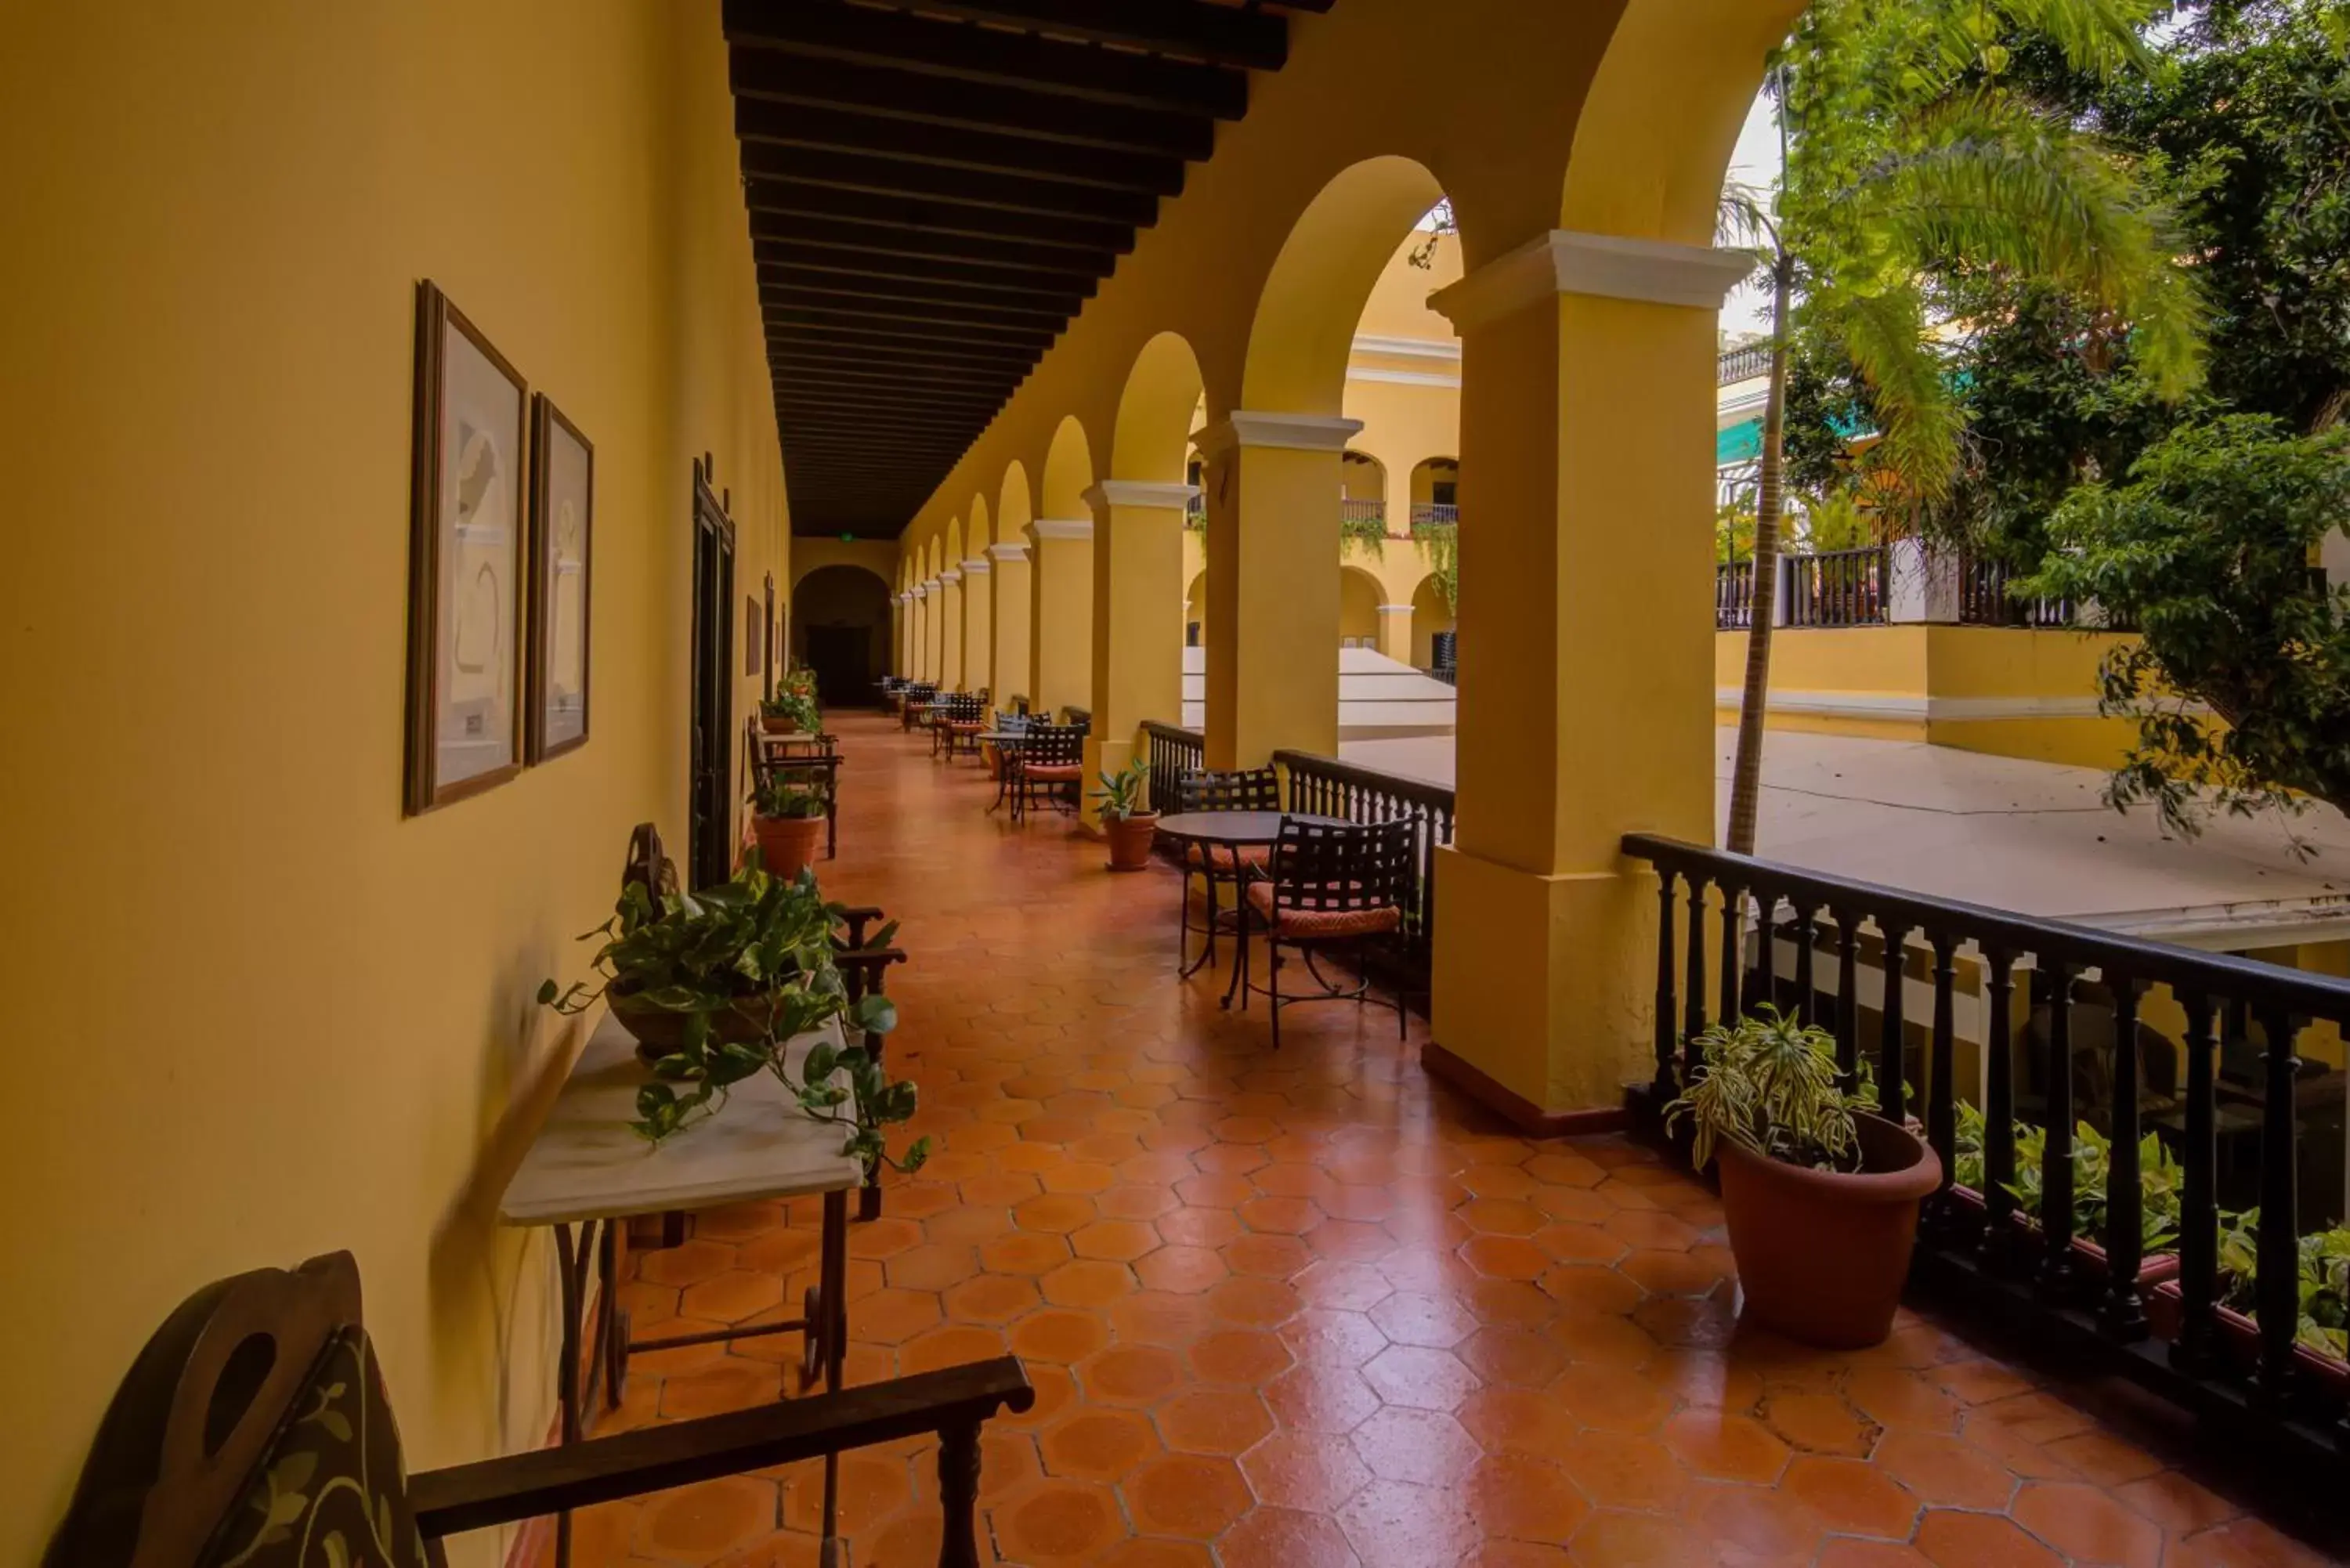 Area and facilities in Hotel El Convento